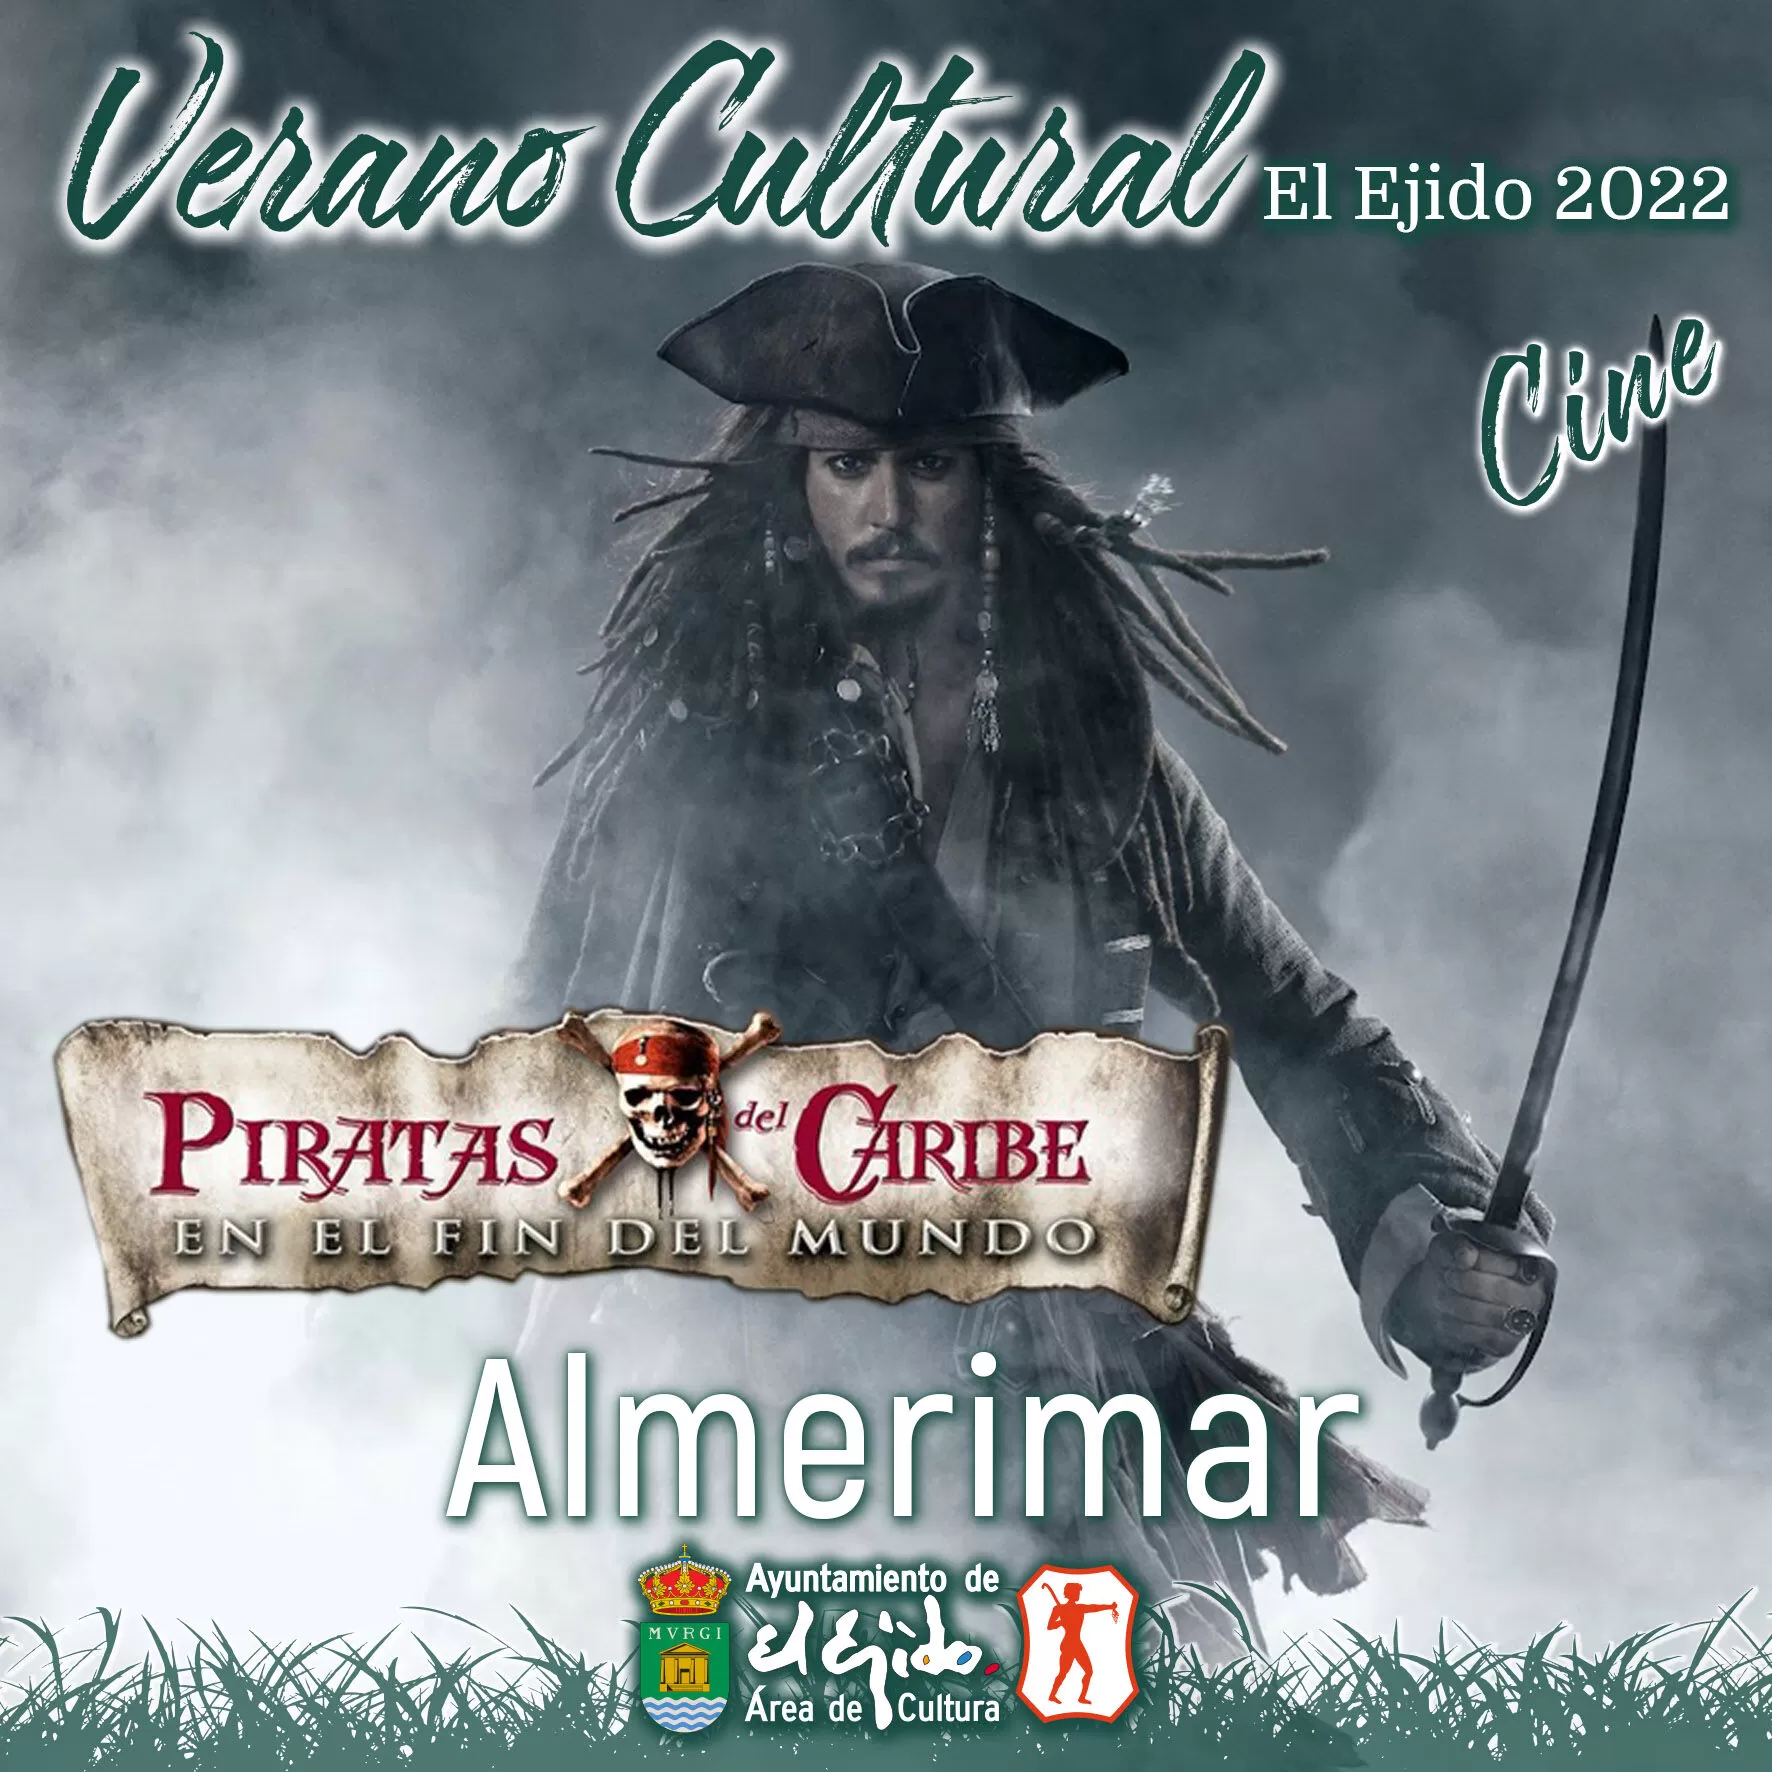 Cultura El Ejido - Cine - Almerimar - Piratas del Caribe en el fin